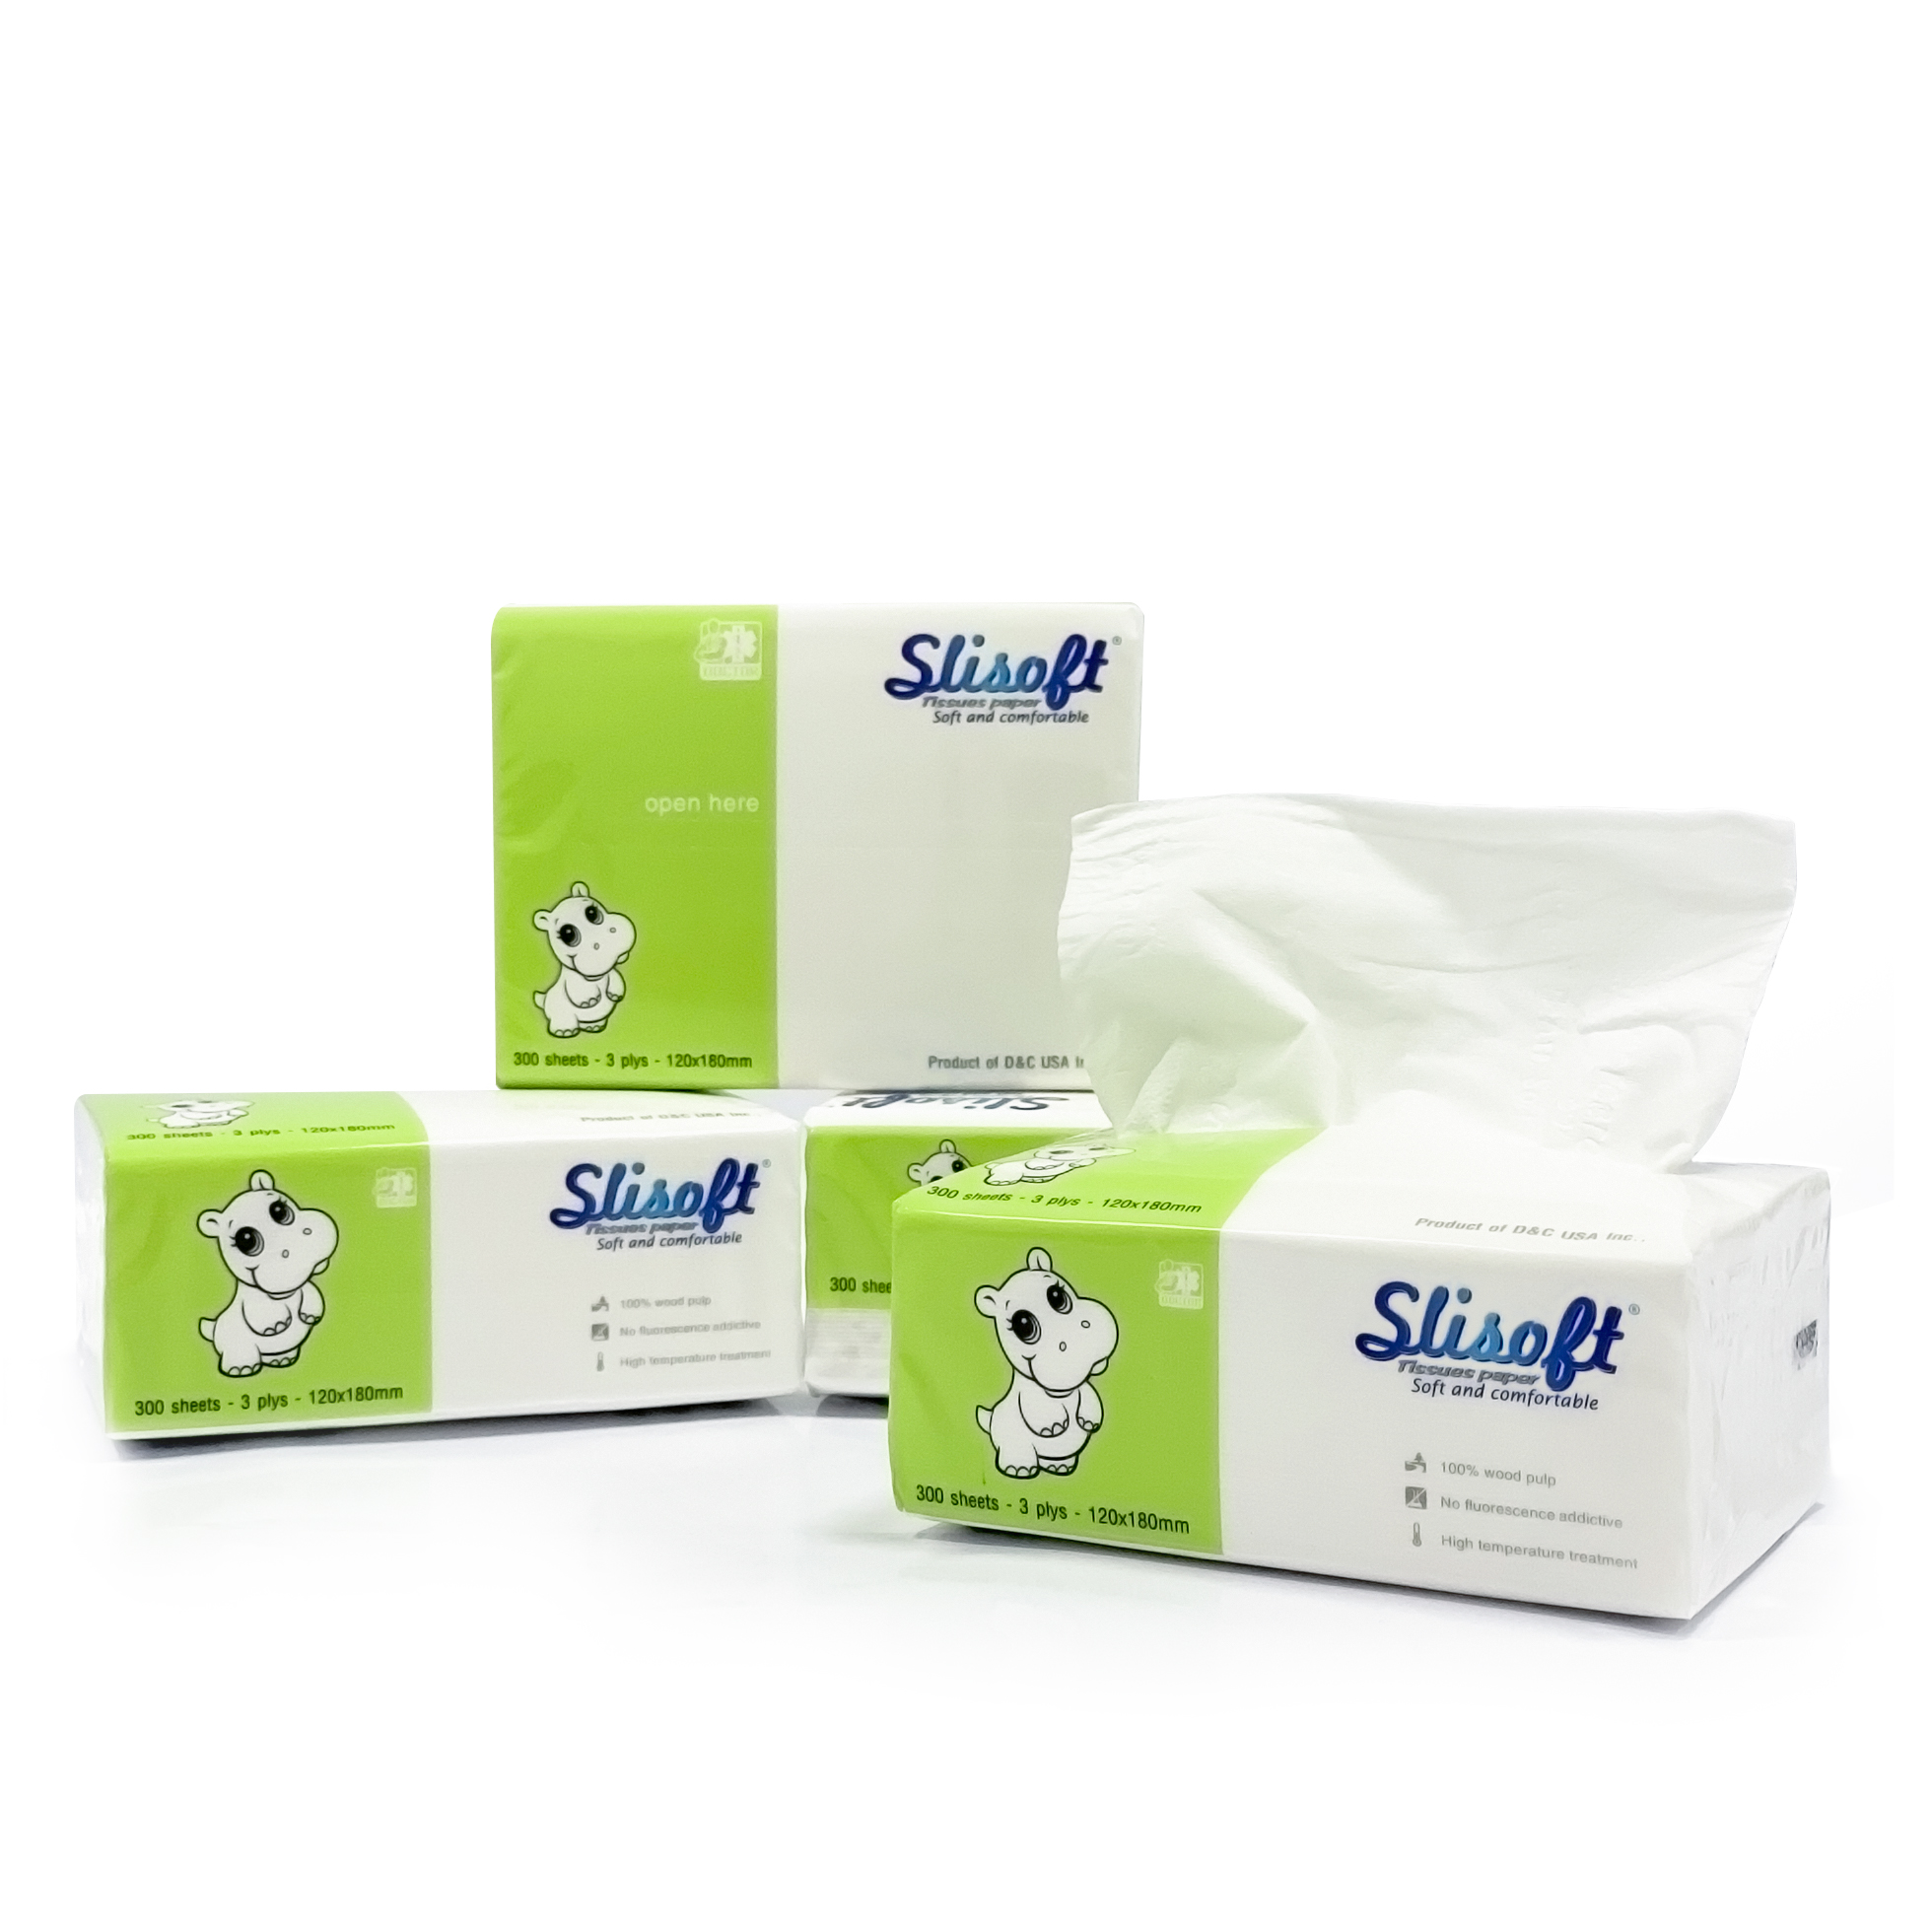 Giấy ăn Slisoft Trắng 100 tờ x 3 lớp, khăn giấy khô thân thiện môi trường không chất tẩy trắng an toàn cho cả gia đình